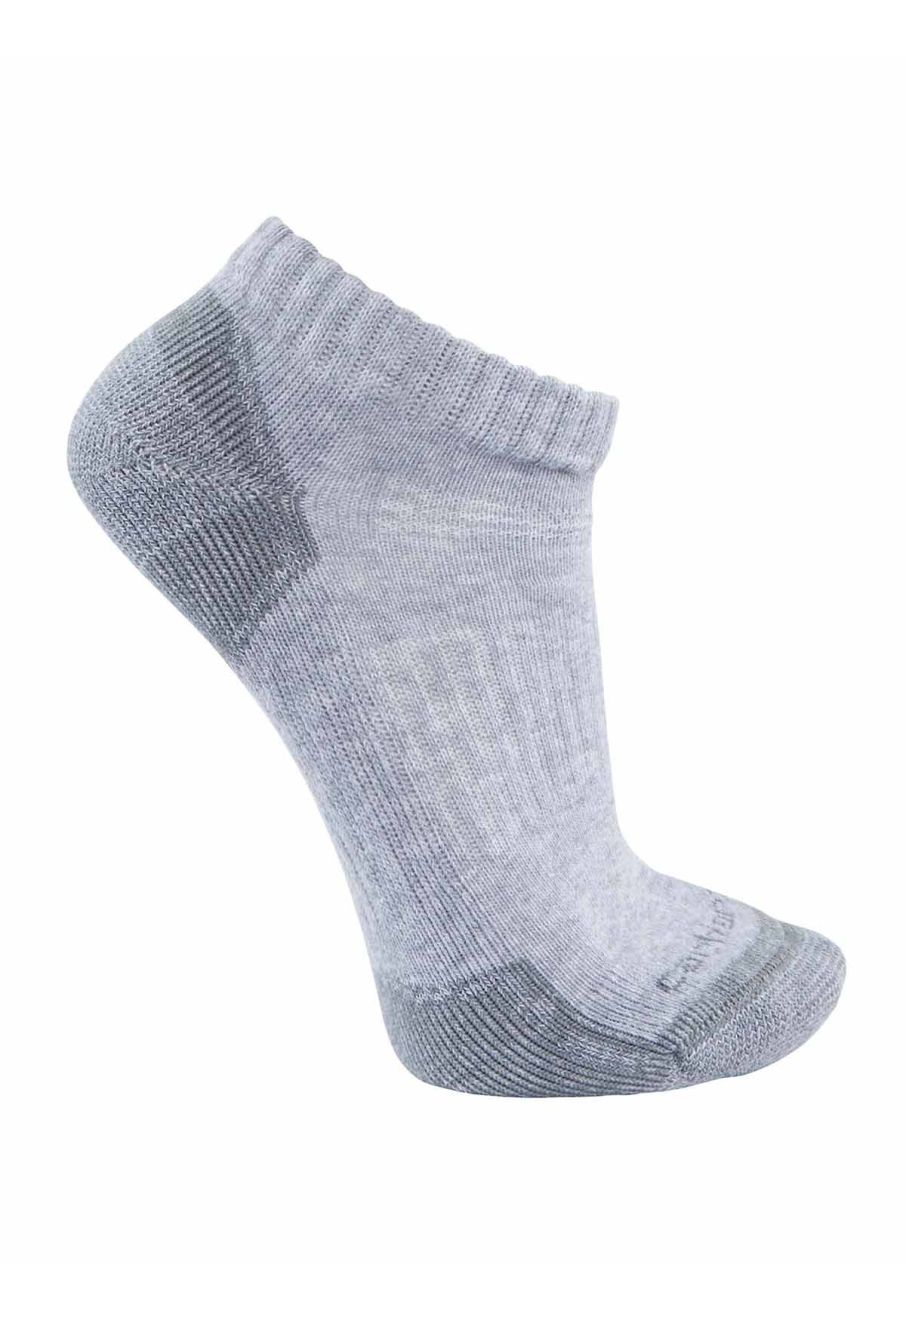 Carhartt Socks 3-Pack Midweight Cotton Blend Low Cut (Men's